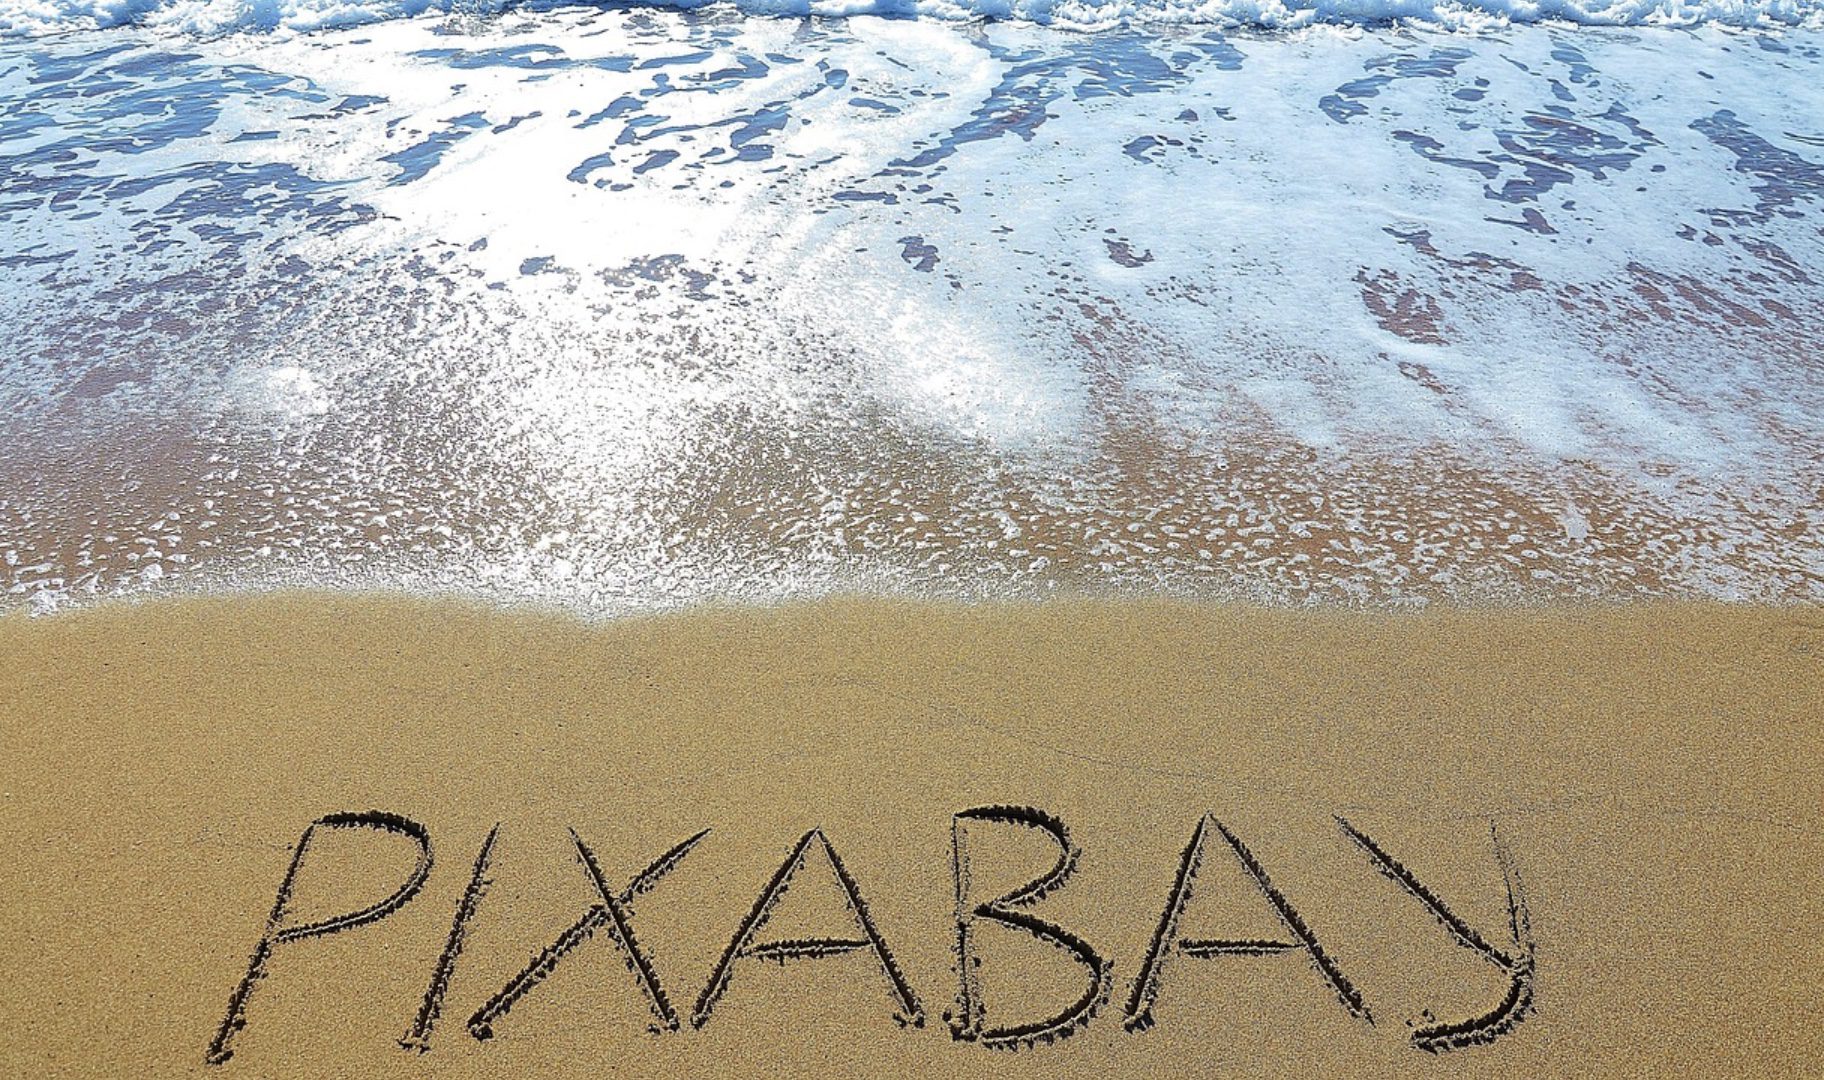 Pixabay et ses images gratuites libres de droits : comment les utiliser ?